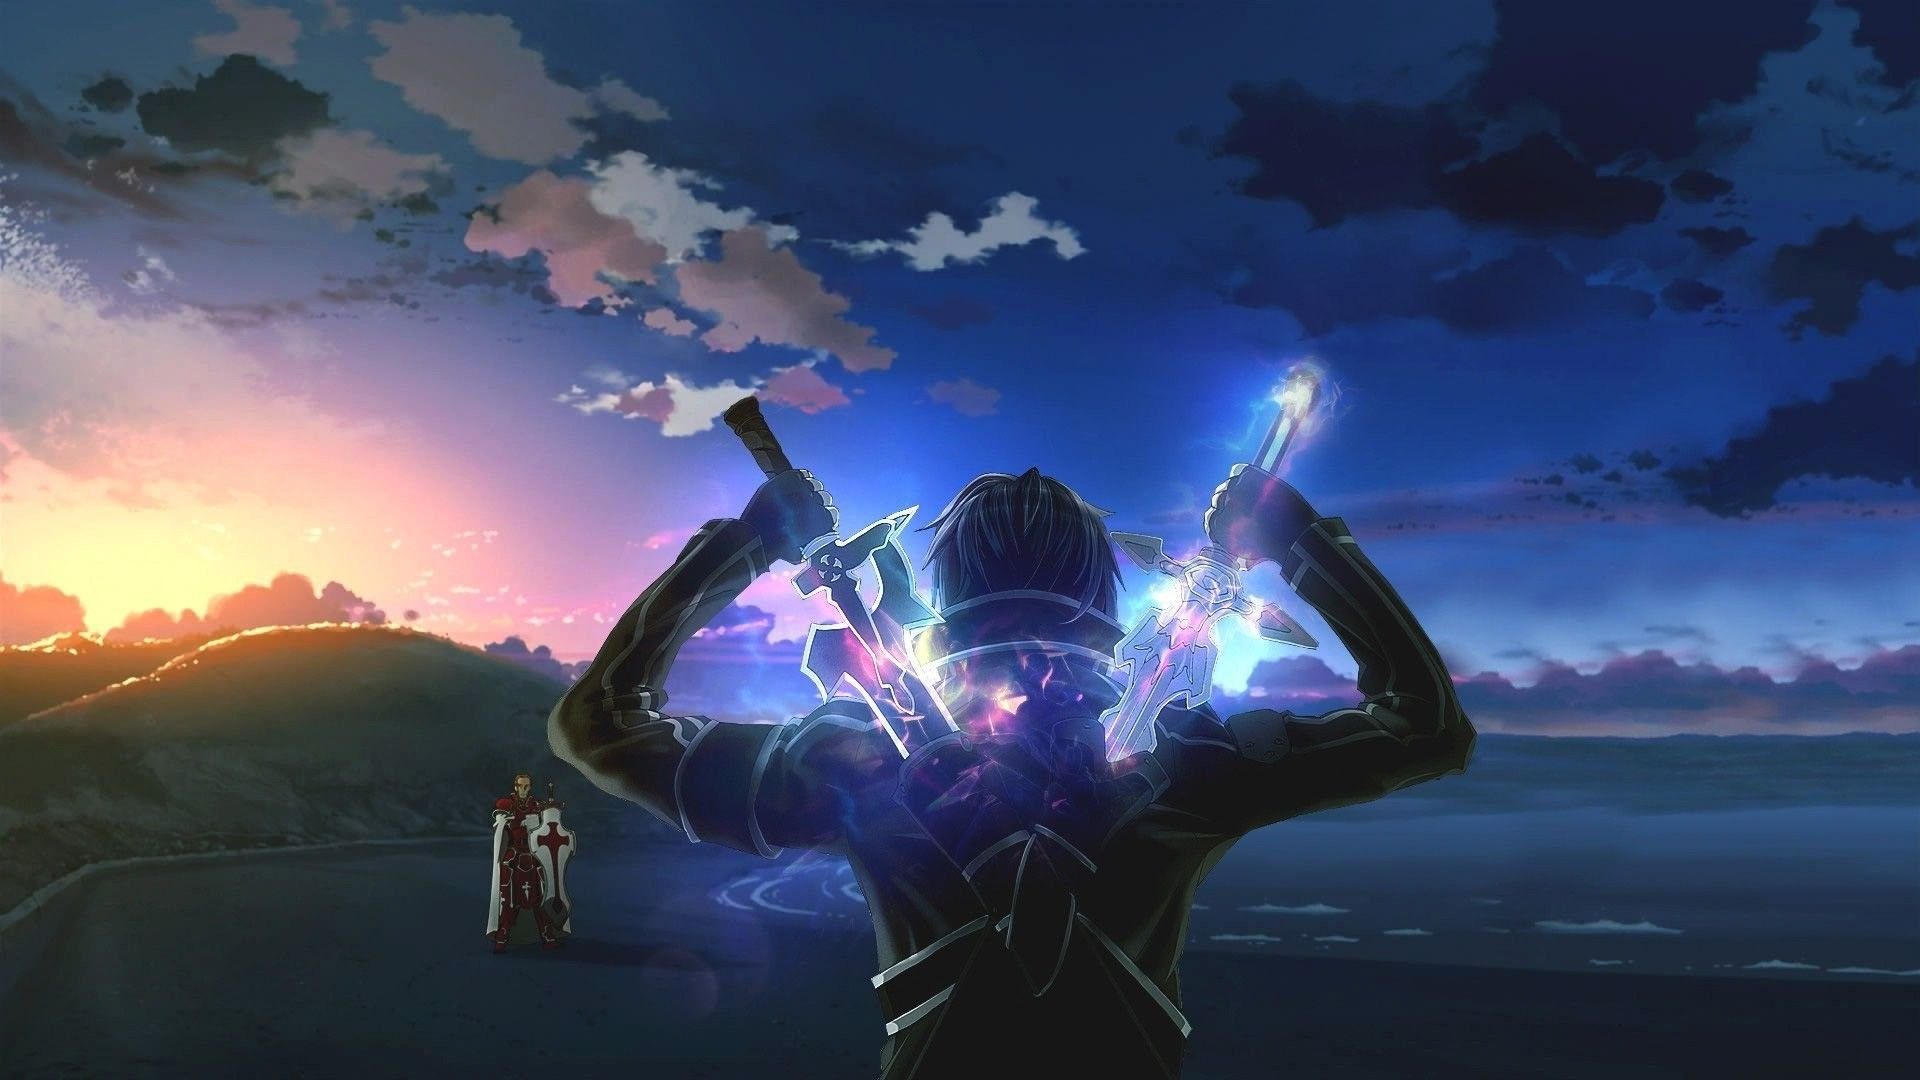 SAO Kirito: Hãy khám phá nét đẹp của nhân vật Kirito trong SAO, một chiến binh mạnh mẽ, tinh nhuệ và sẵn sàng chống lại mọi thách thức.